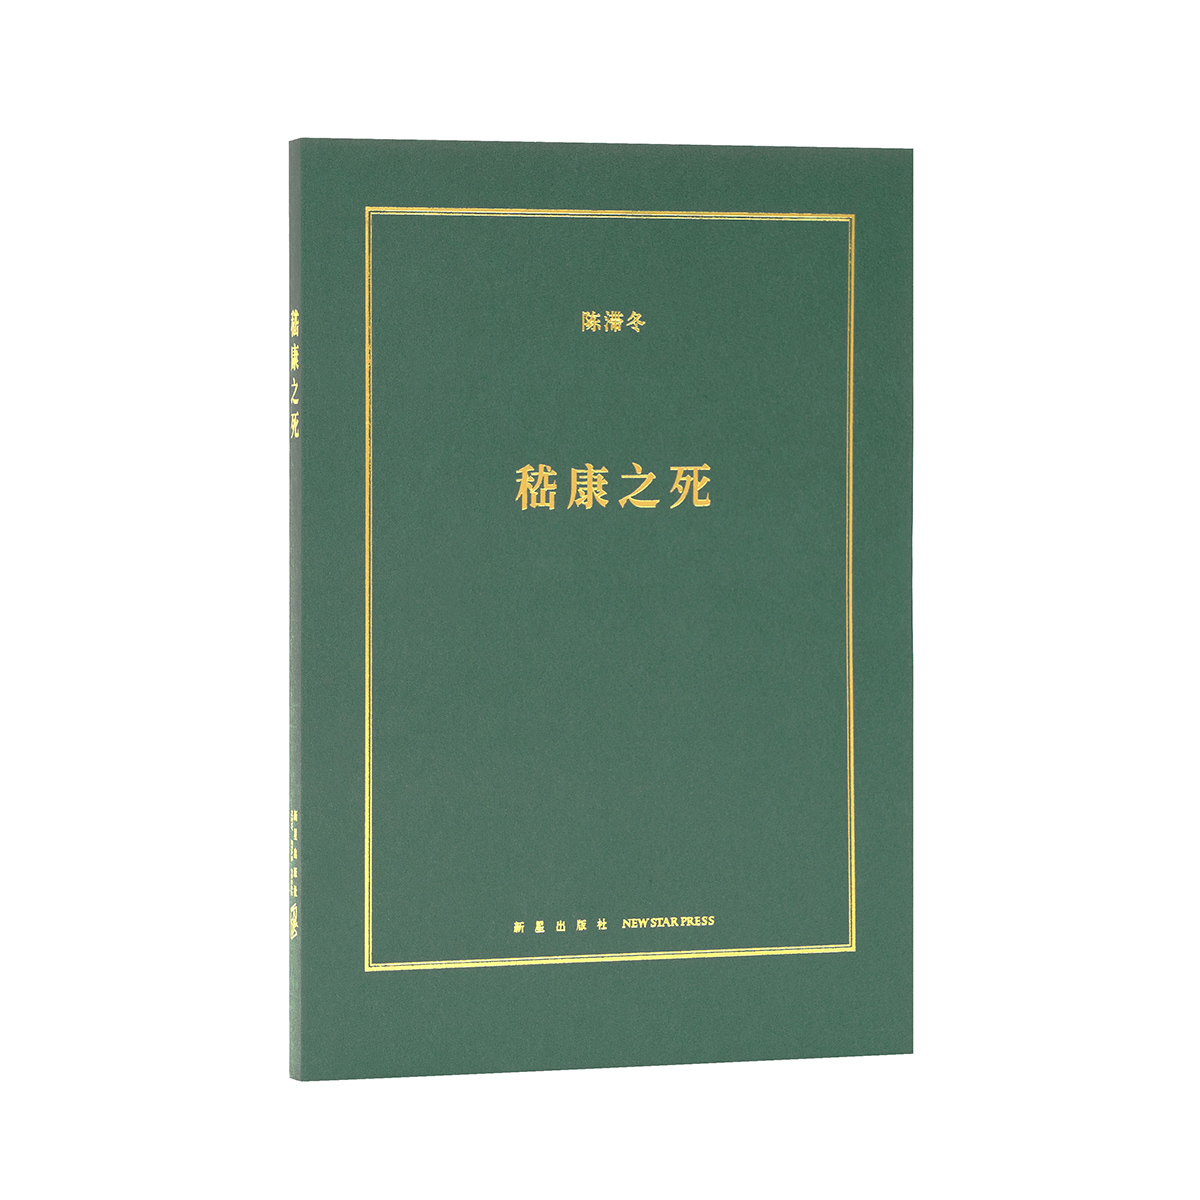 《嵇康之死》被竹林七贤的神话消解的精神气质 诗人 音乐家 哲学家 铁匠 美男子 读库小册子